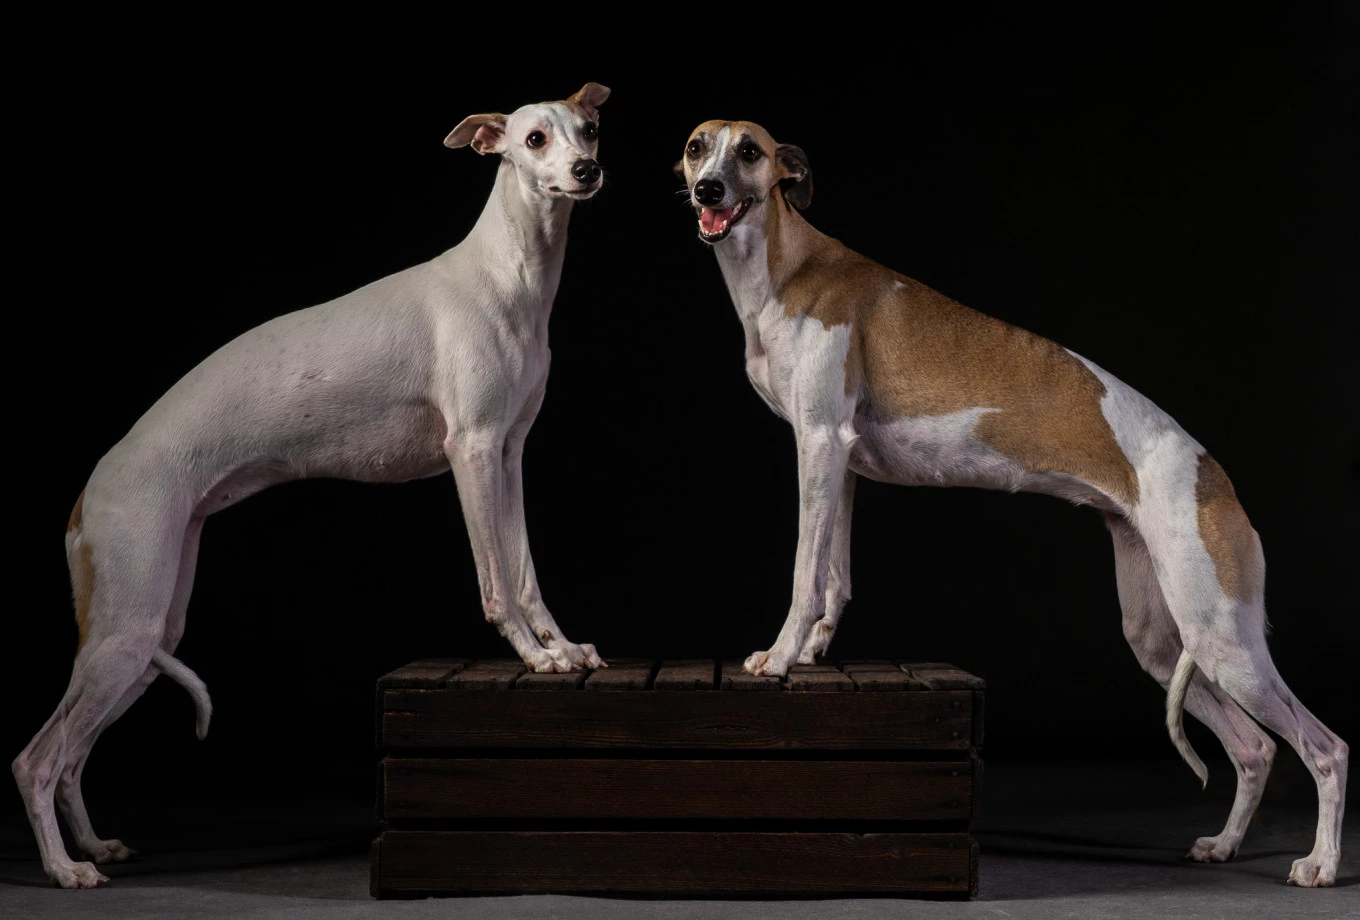 fotograf poznan inoinu portfolio zdjecia zdjecia zwierzat sesja zdjeciowa konie psy koty